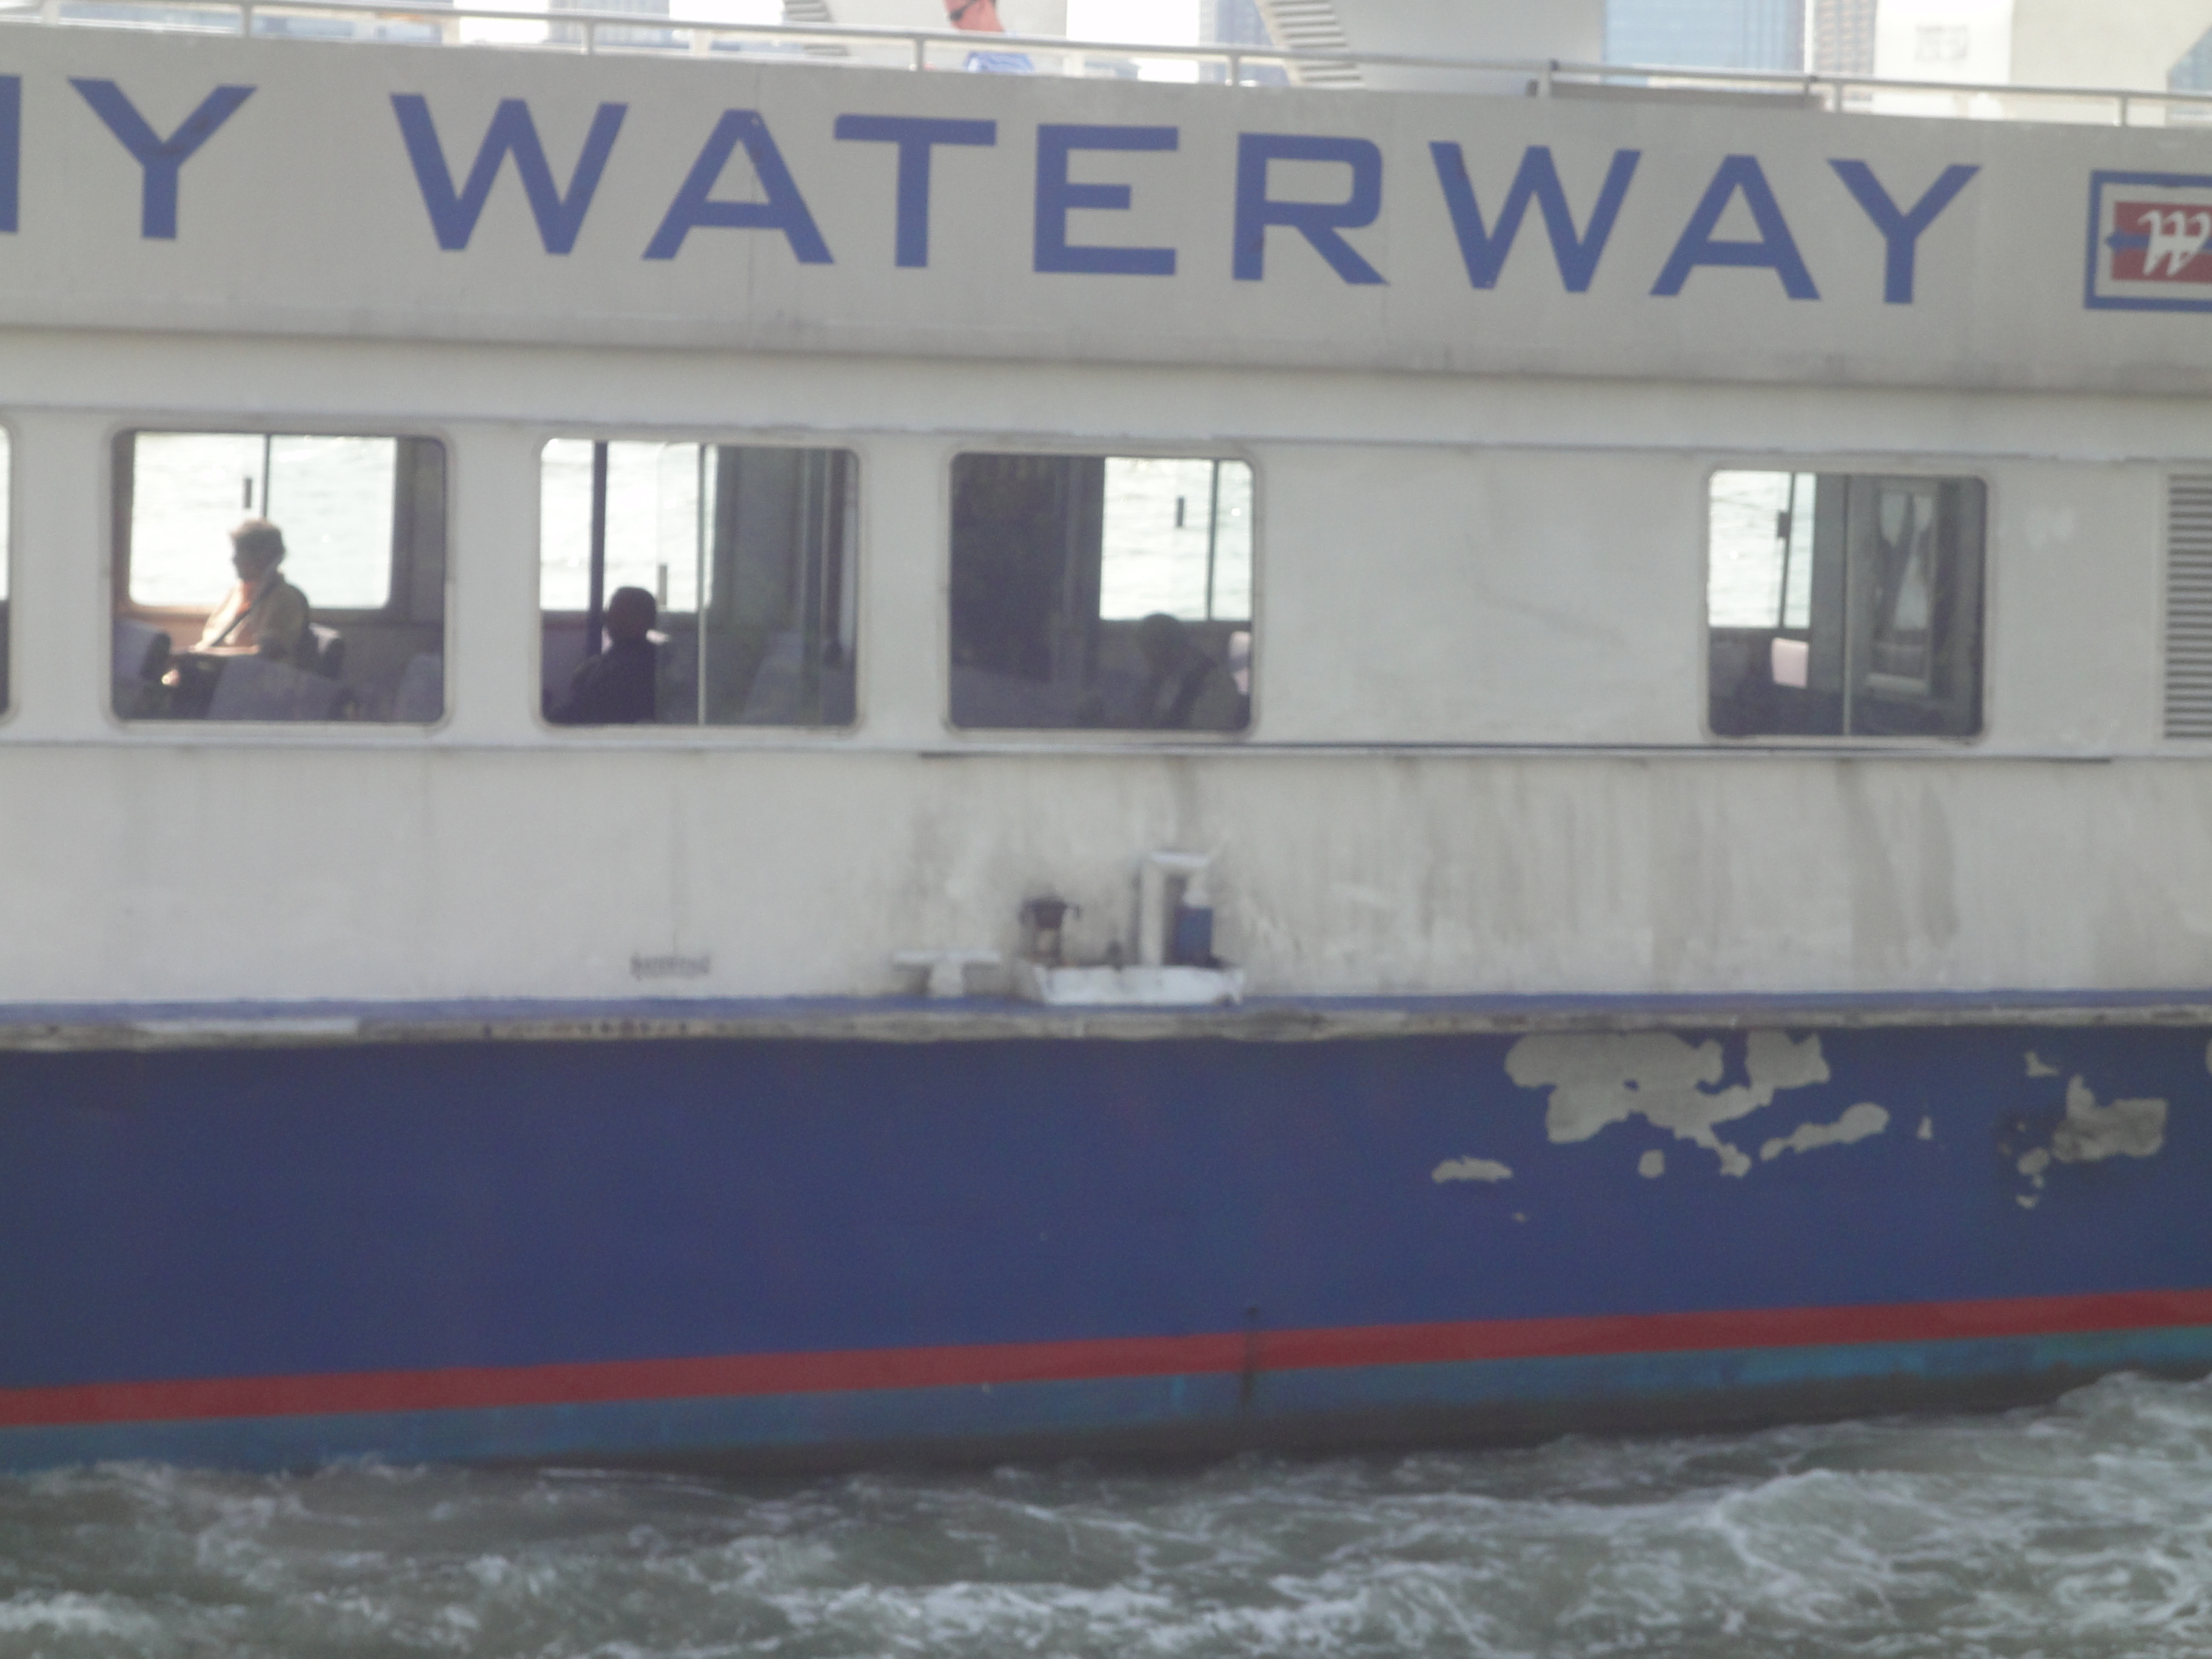 Paint peeling from NY waterway boat